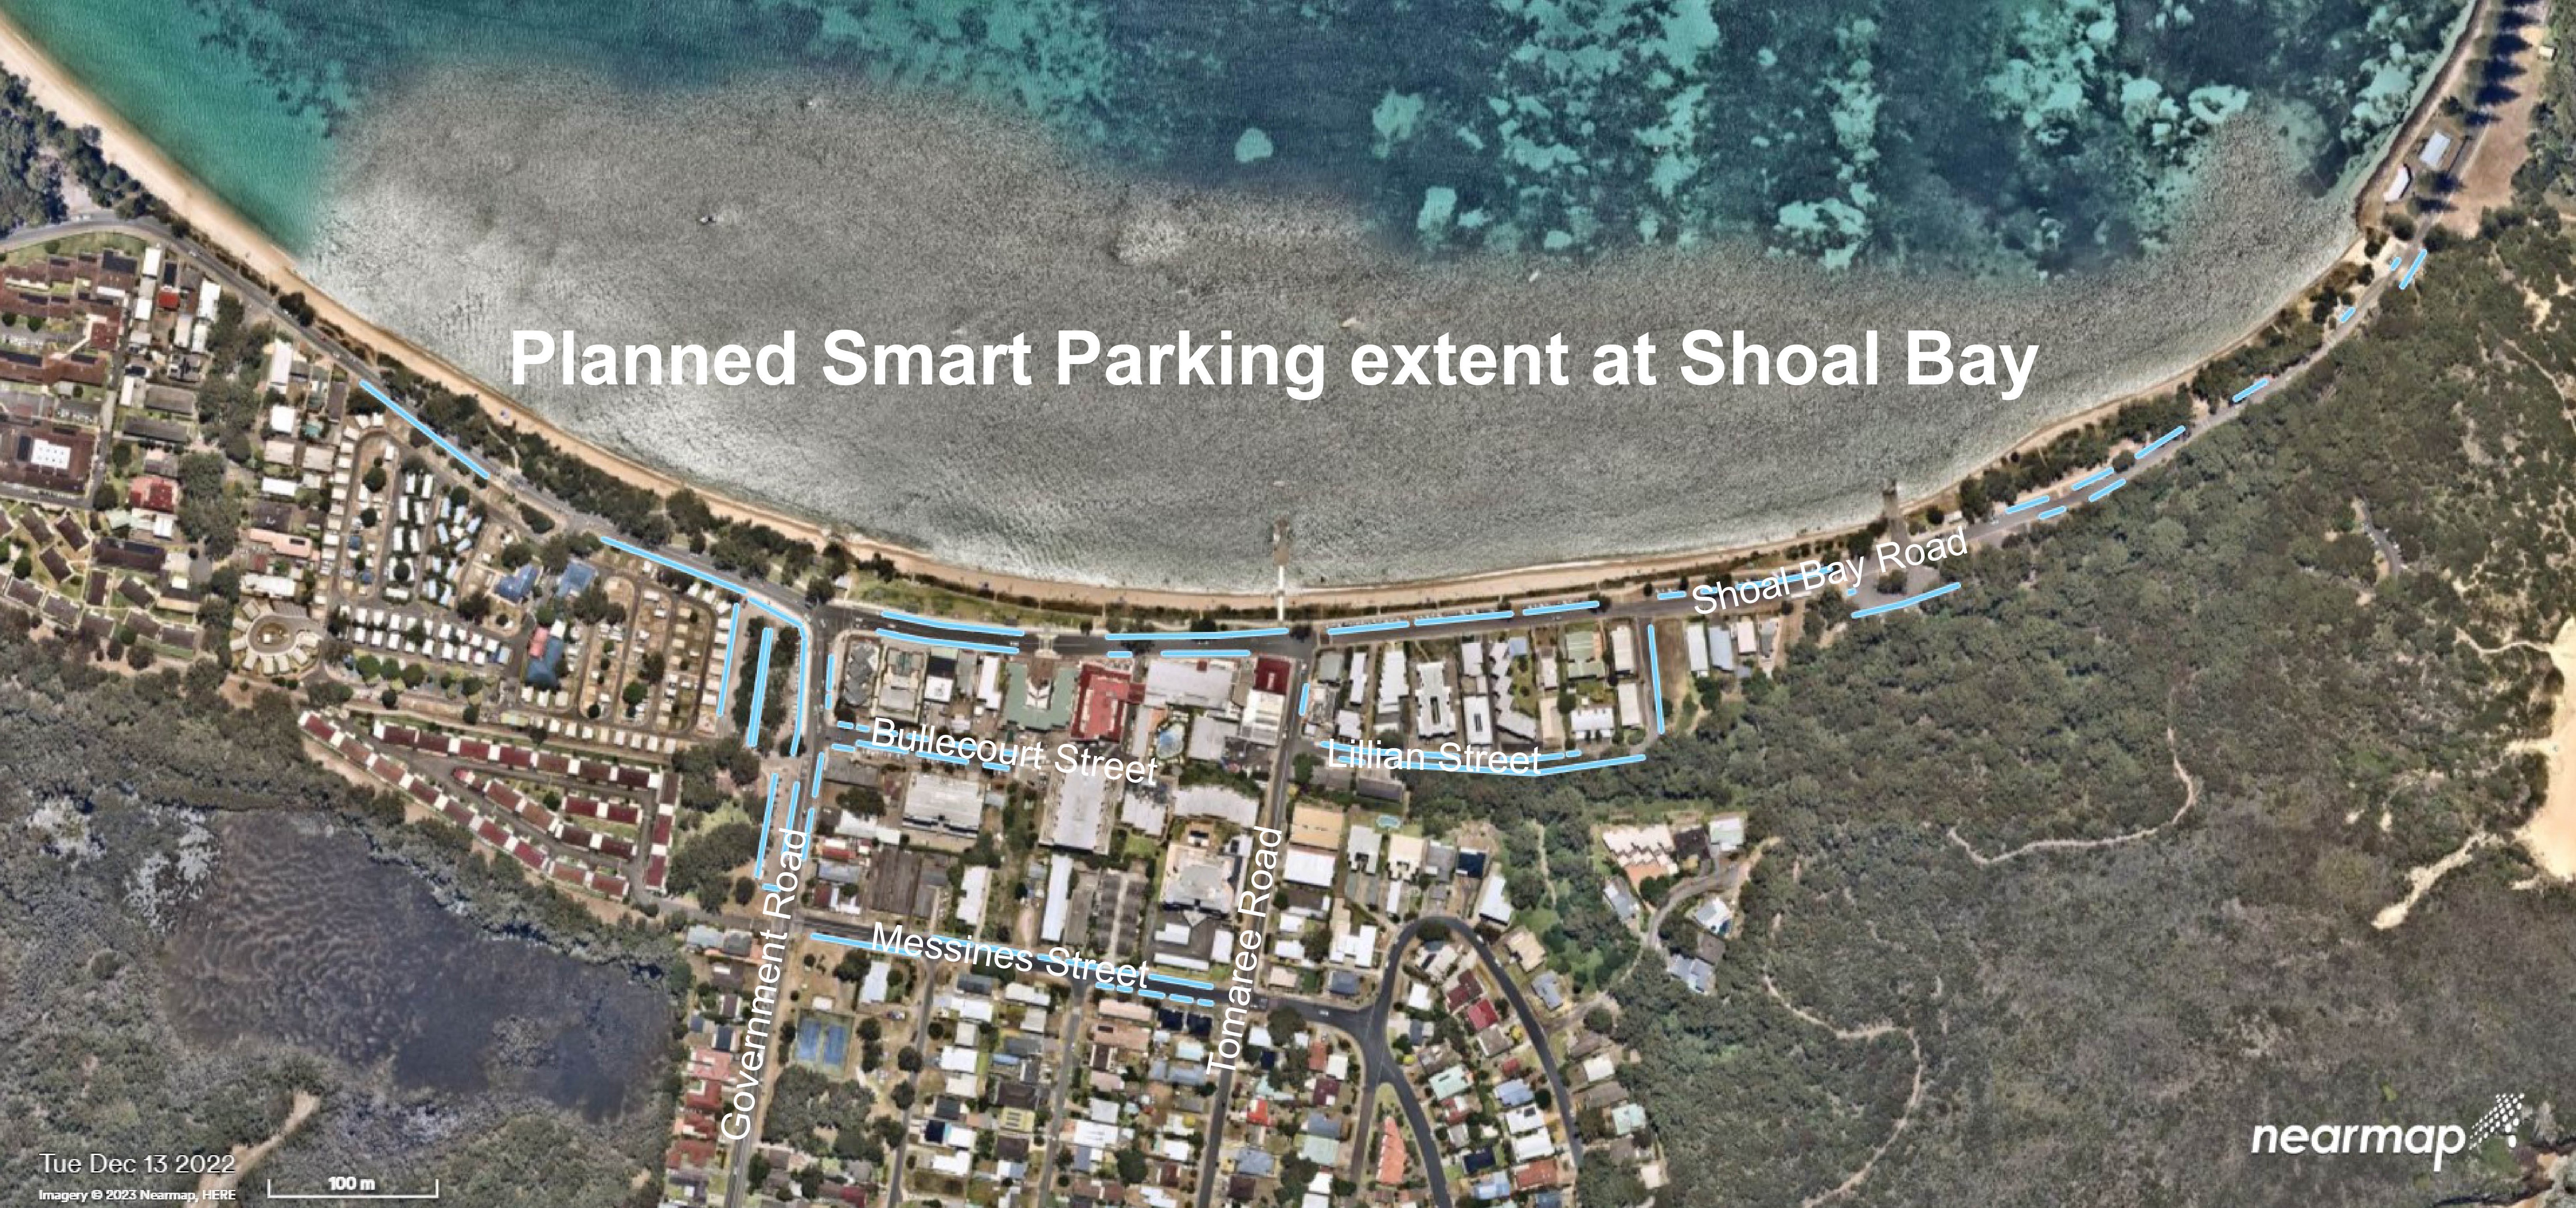 Shoal Bay Smart Parking Extent Map